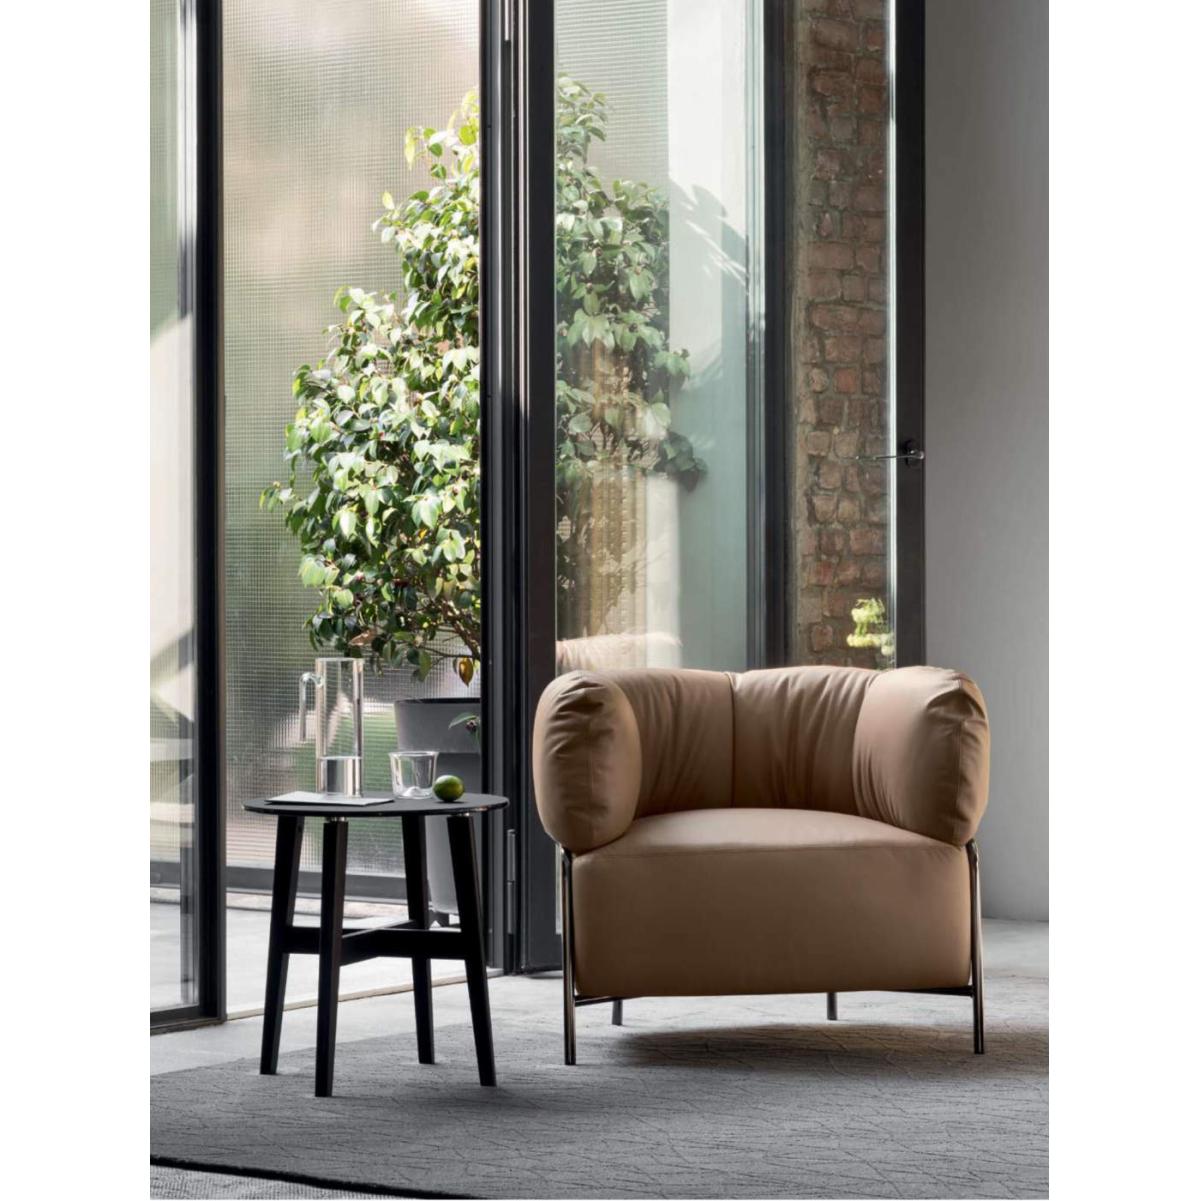 Calligaris Quadrotta armchair // Quadrotta fotel